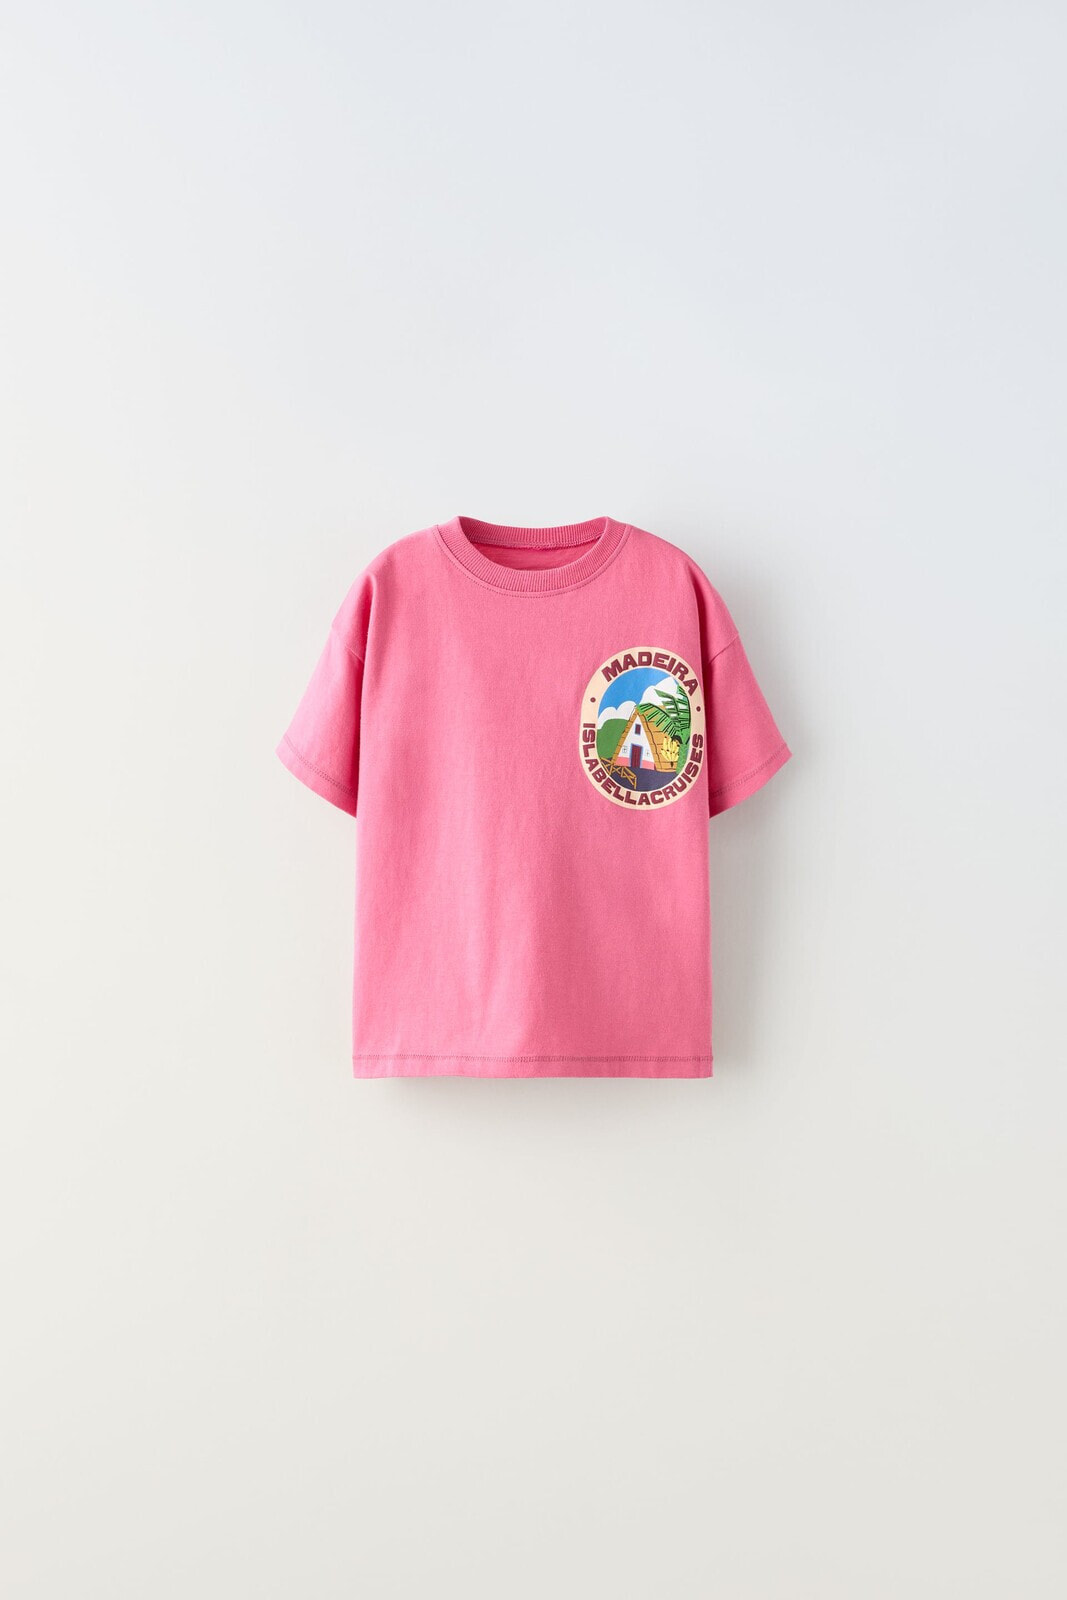 Madeira print t-shirt